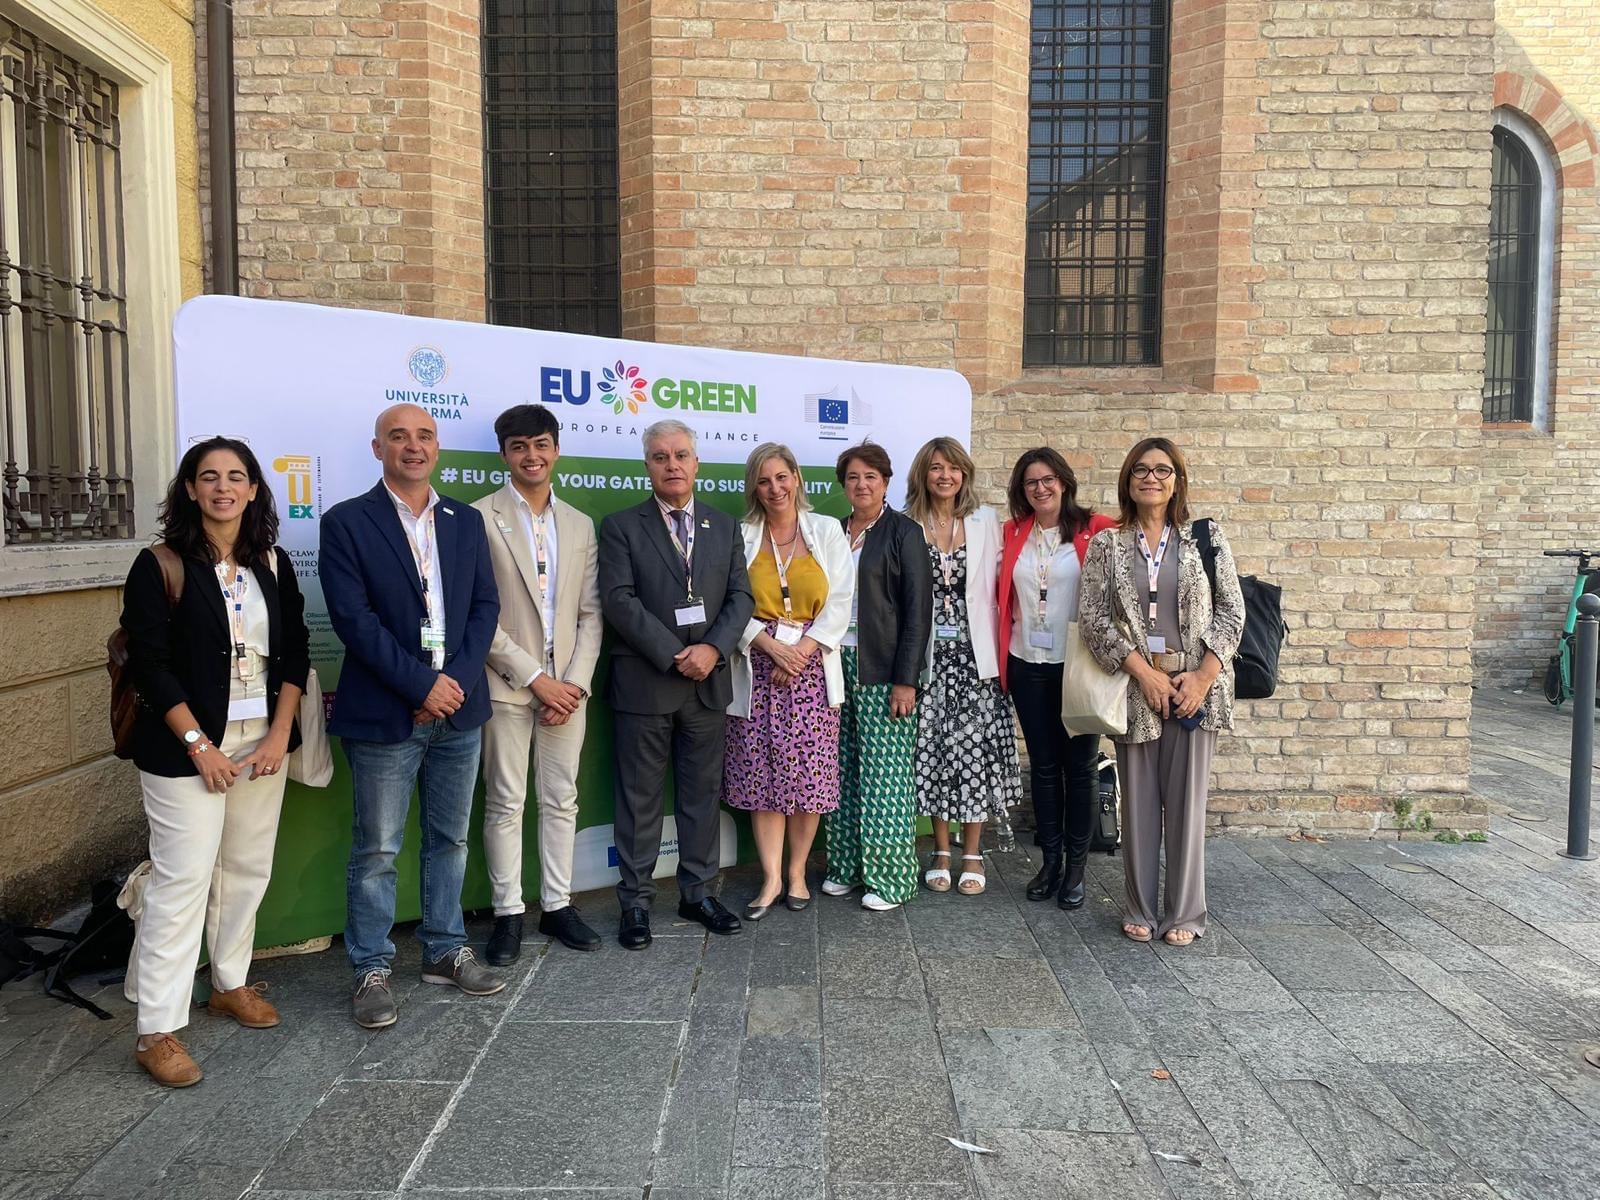 Clausurada con éxito la reunión de las nueve universidades de la Alianza EU GREEN en Parma (Italia)